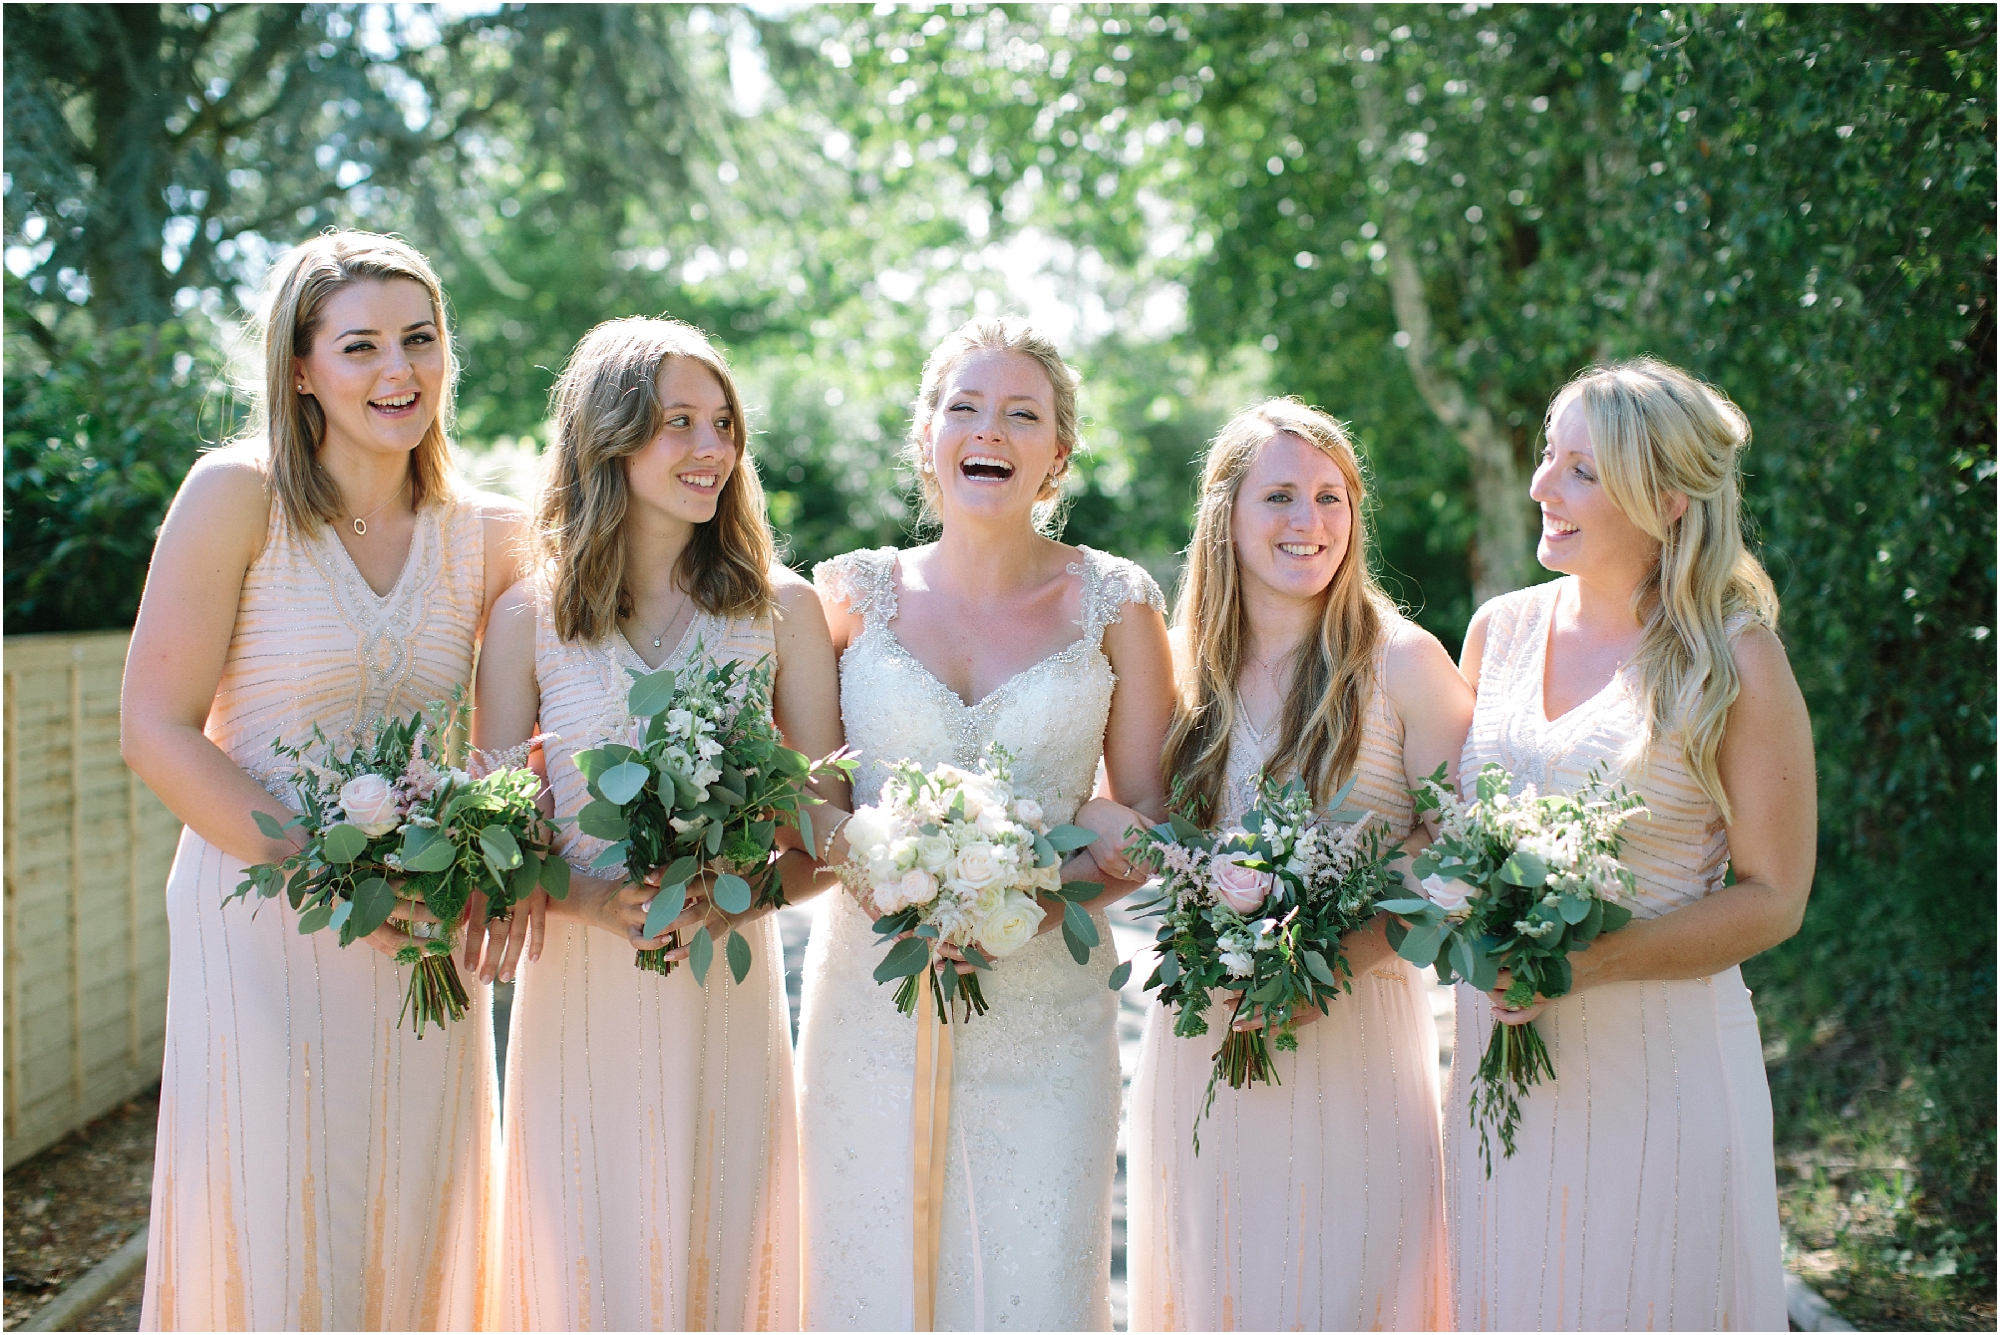 Bridesmaids in peach dresses